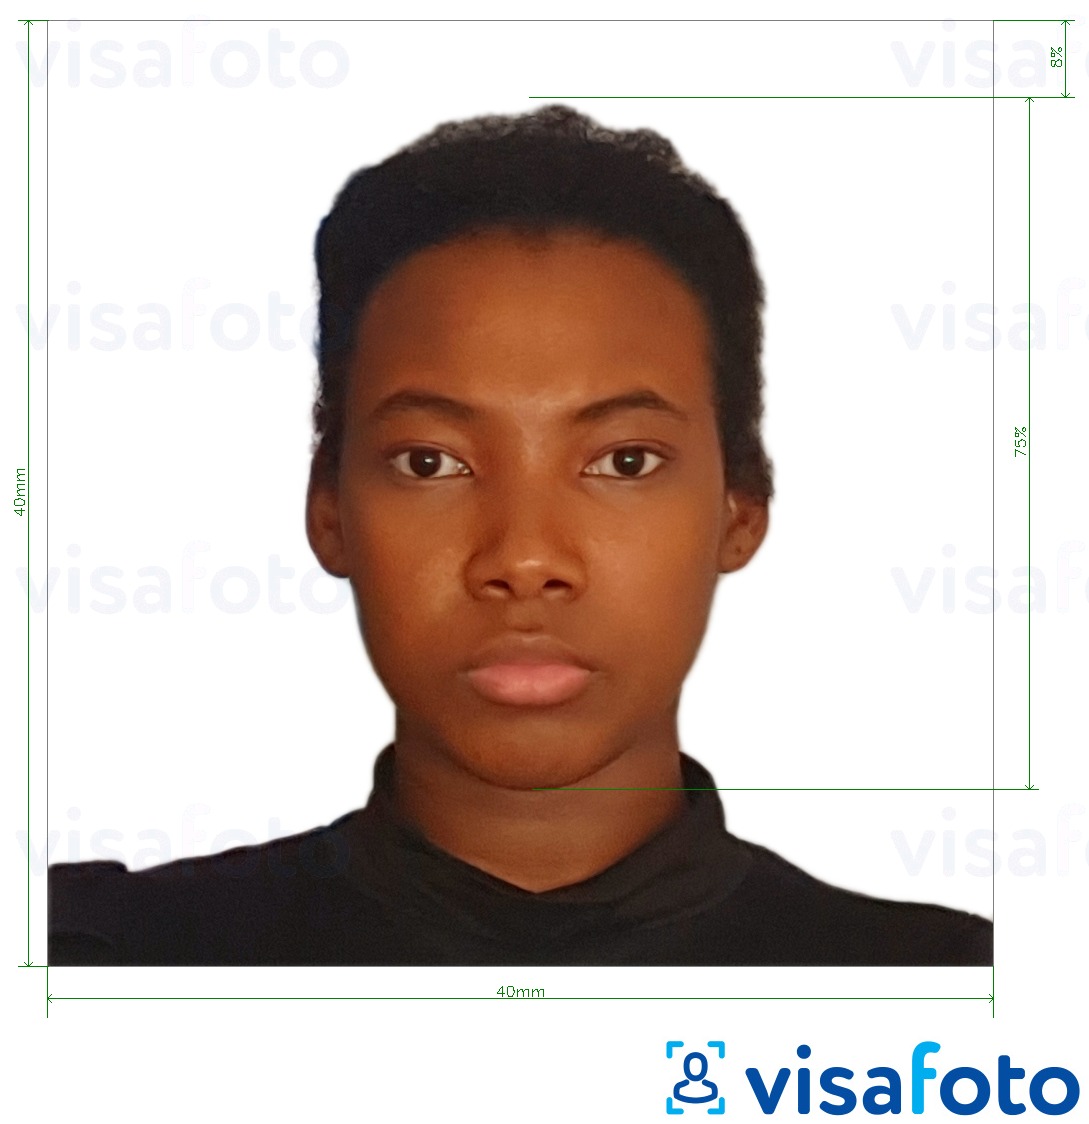 Primer fotografije za Kamerunski vizum 4x4 cm (40x40 mm) z natančno specifikacijo velikosti